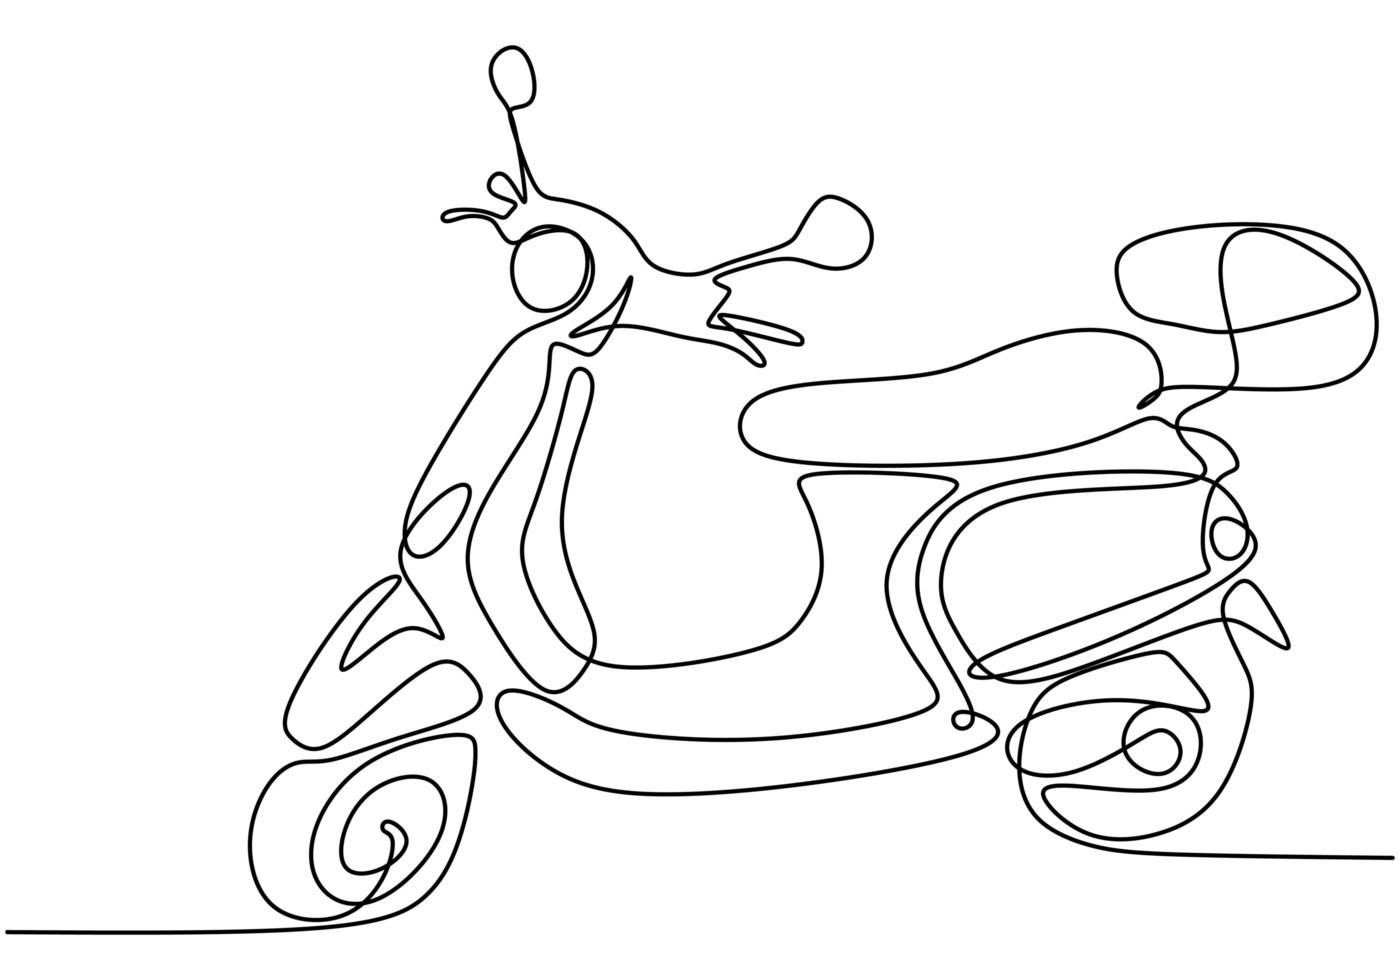 una motocicleta de dibujo lineal. Motocicleta abstracta dibujar a mano diseño minimalista de arte lineal aislado sobre fondo blanco. vector